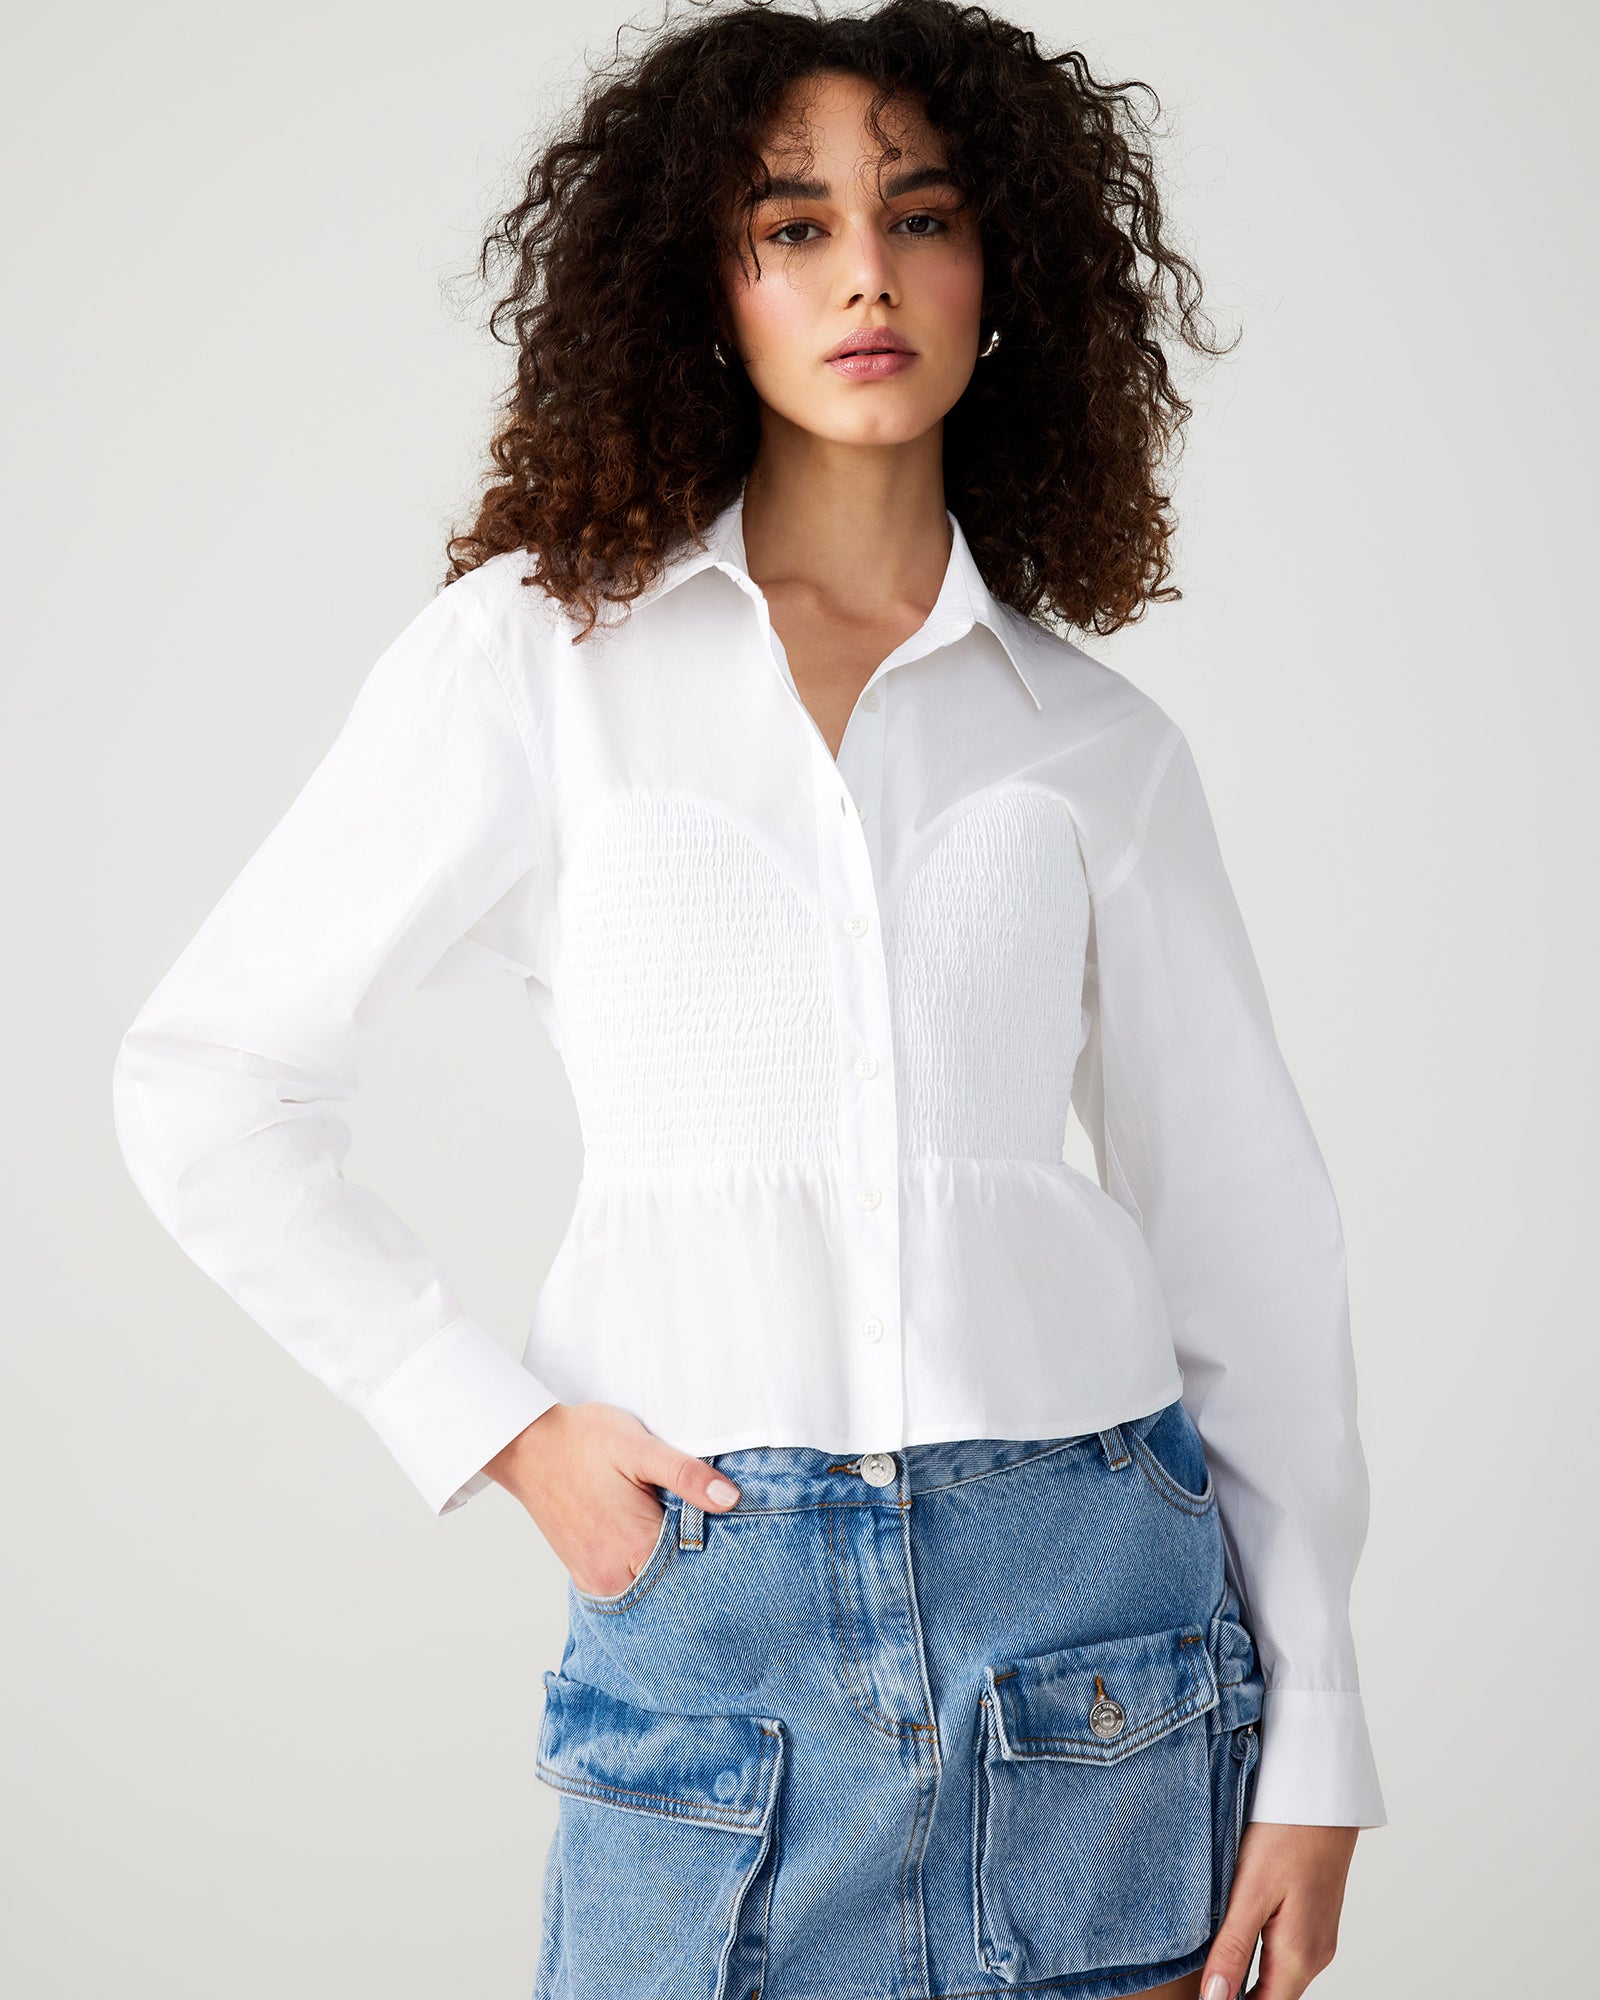 Tops & Sweaters | Women's Tops, Loungewear, Jackets, Blazers